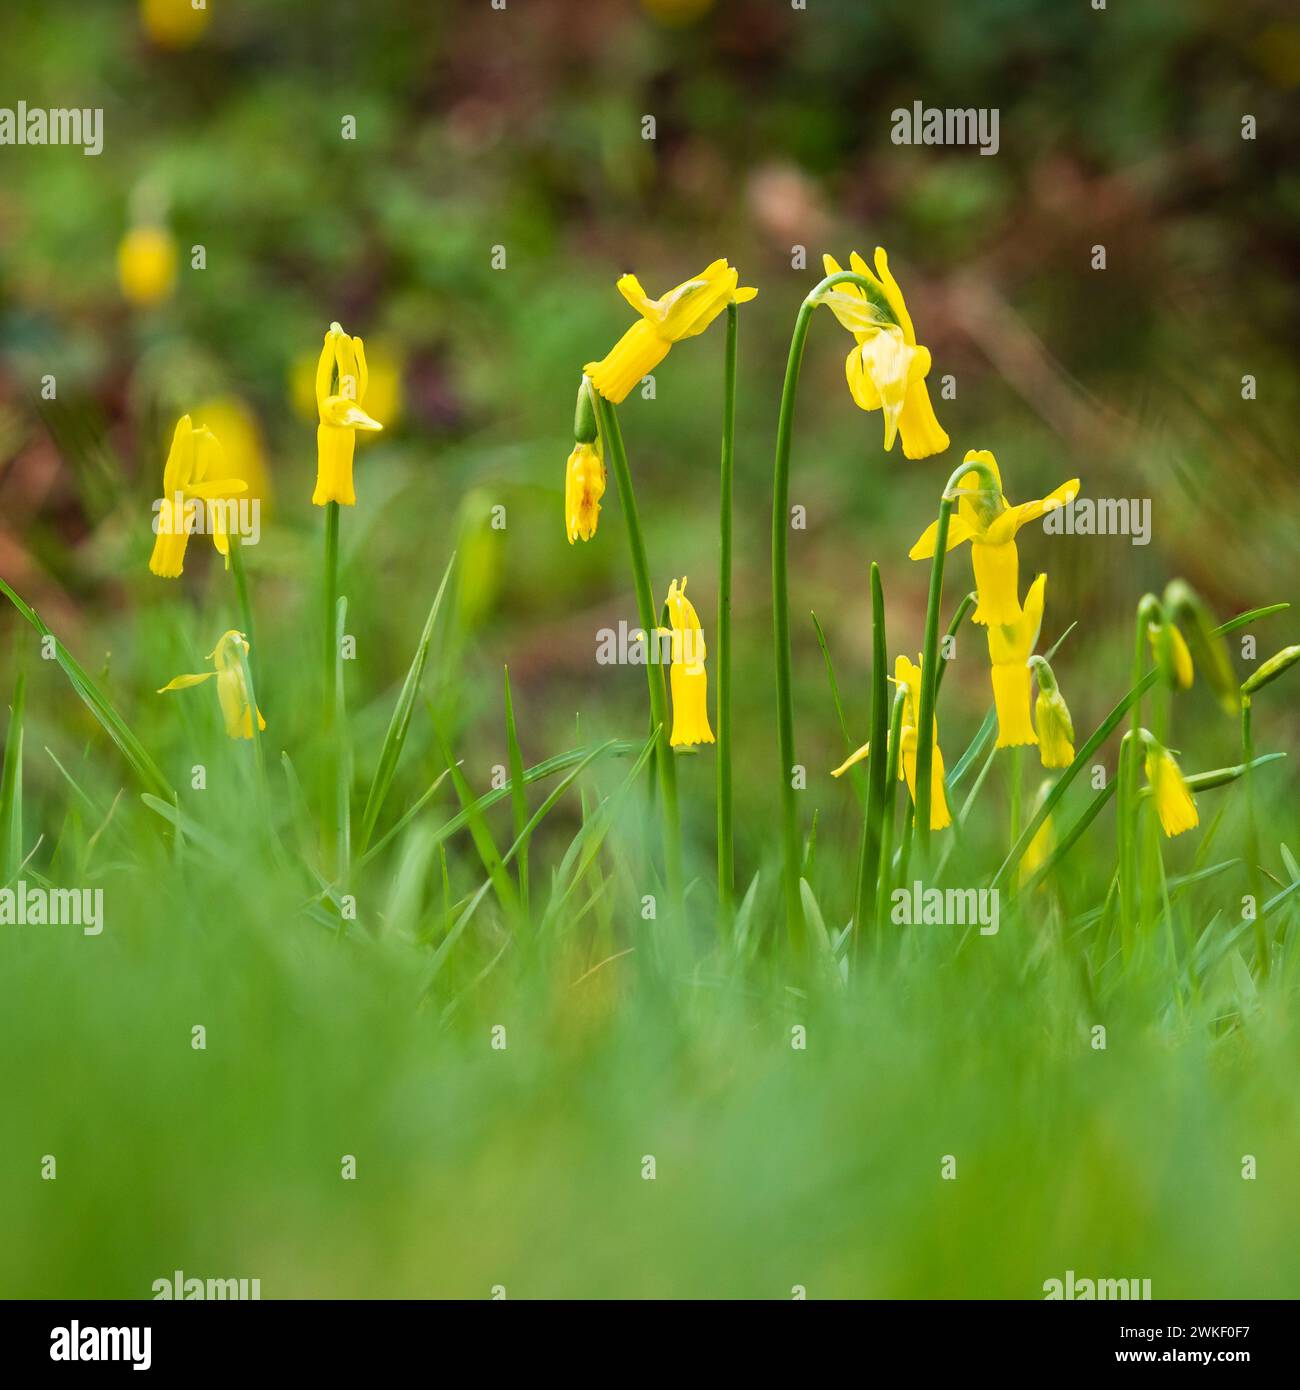 Fiori gialli con petali riflessi della miniatura, narcisi fioriti dal tardo inverno all'inizio della primavera, Narciso ciclamino Foto Stock